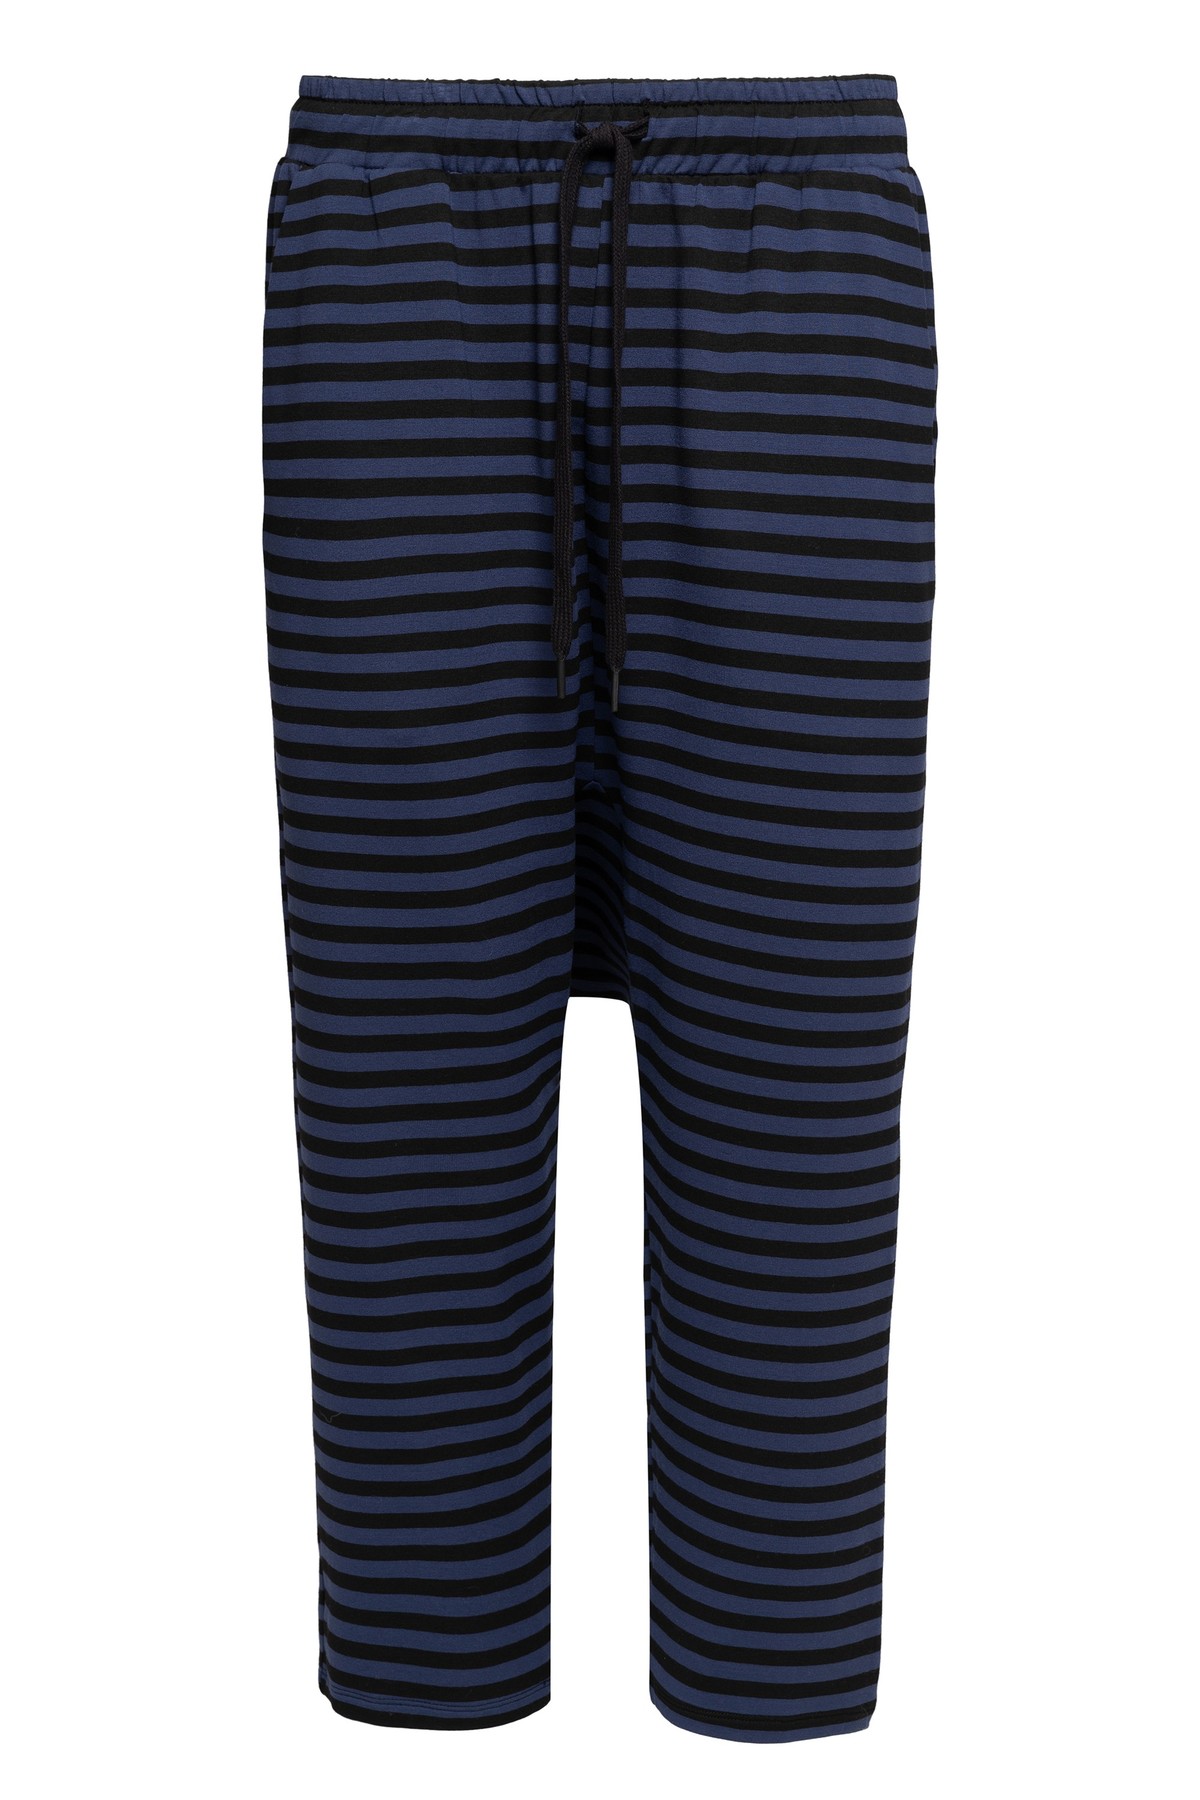 calça gancho baixo em moletom listrado | low-rise striped sweatpants